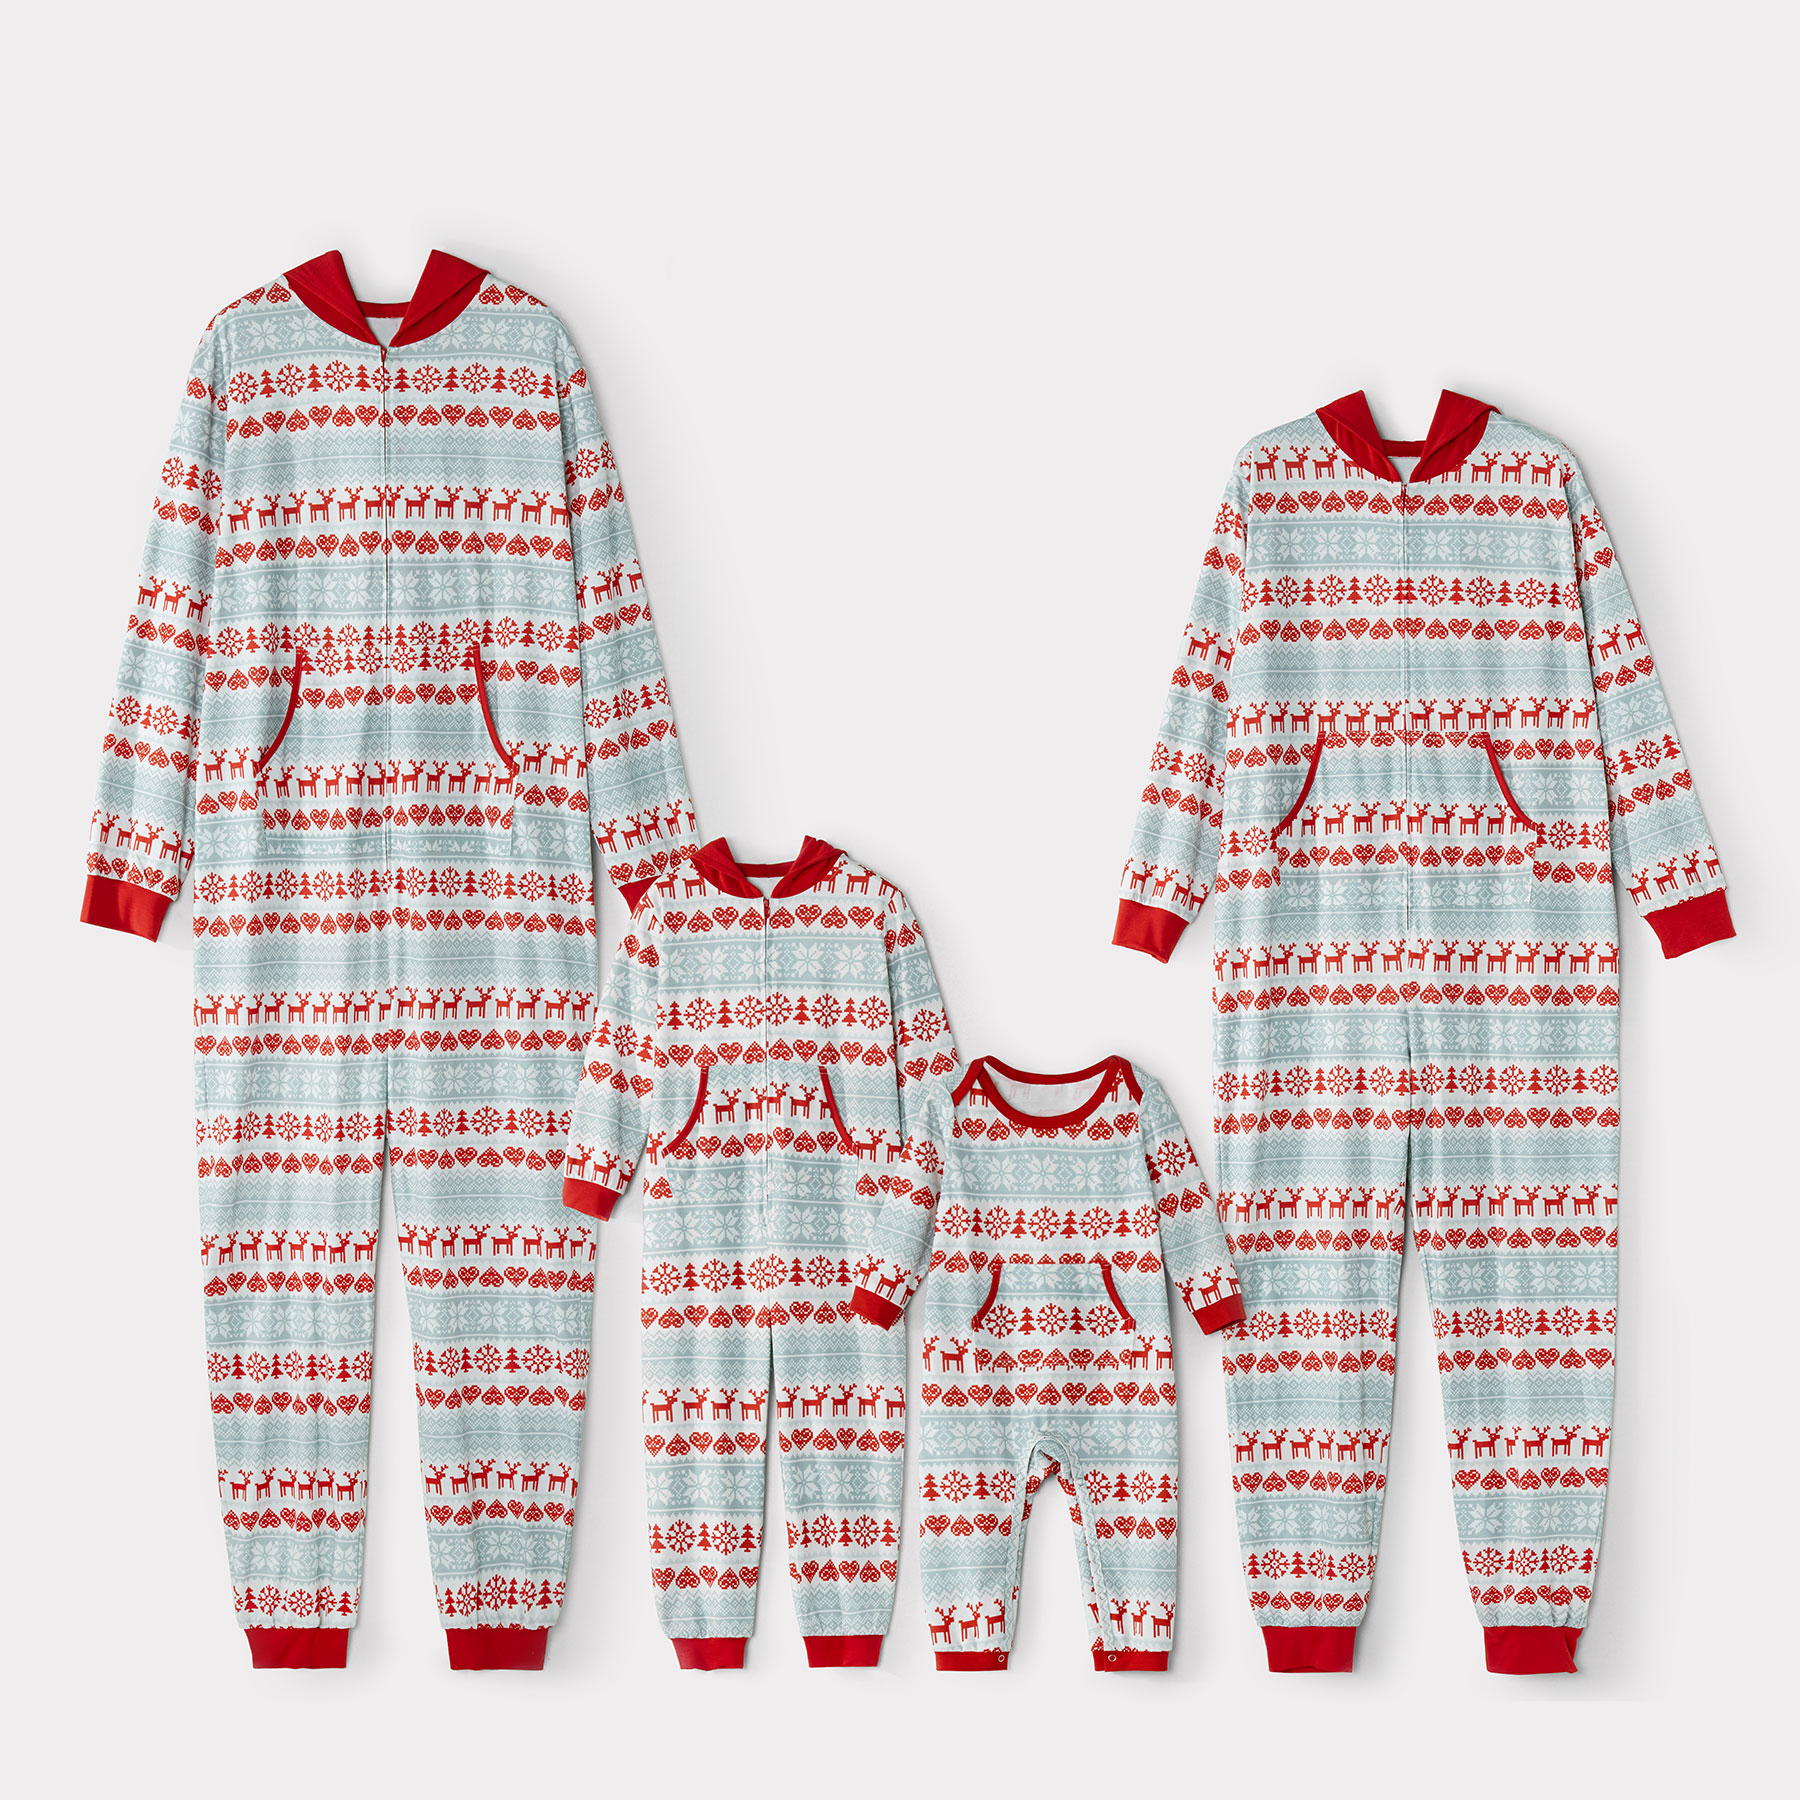 Mosaic Family Matching Reindeer Christmas Onesie Hoodie Pajamas for Dad - Mom - Kid - Baby